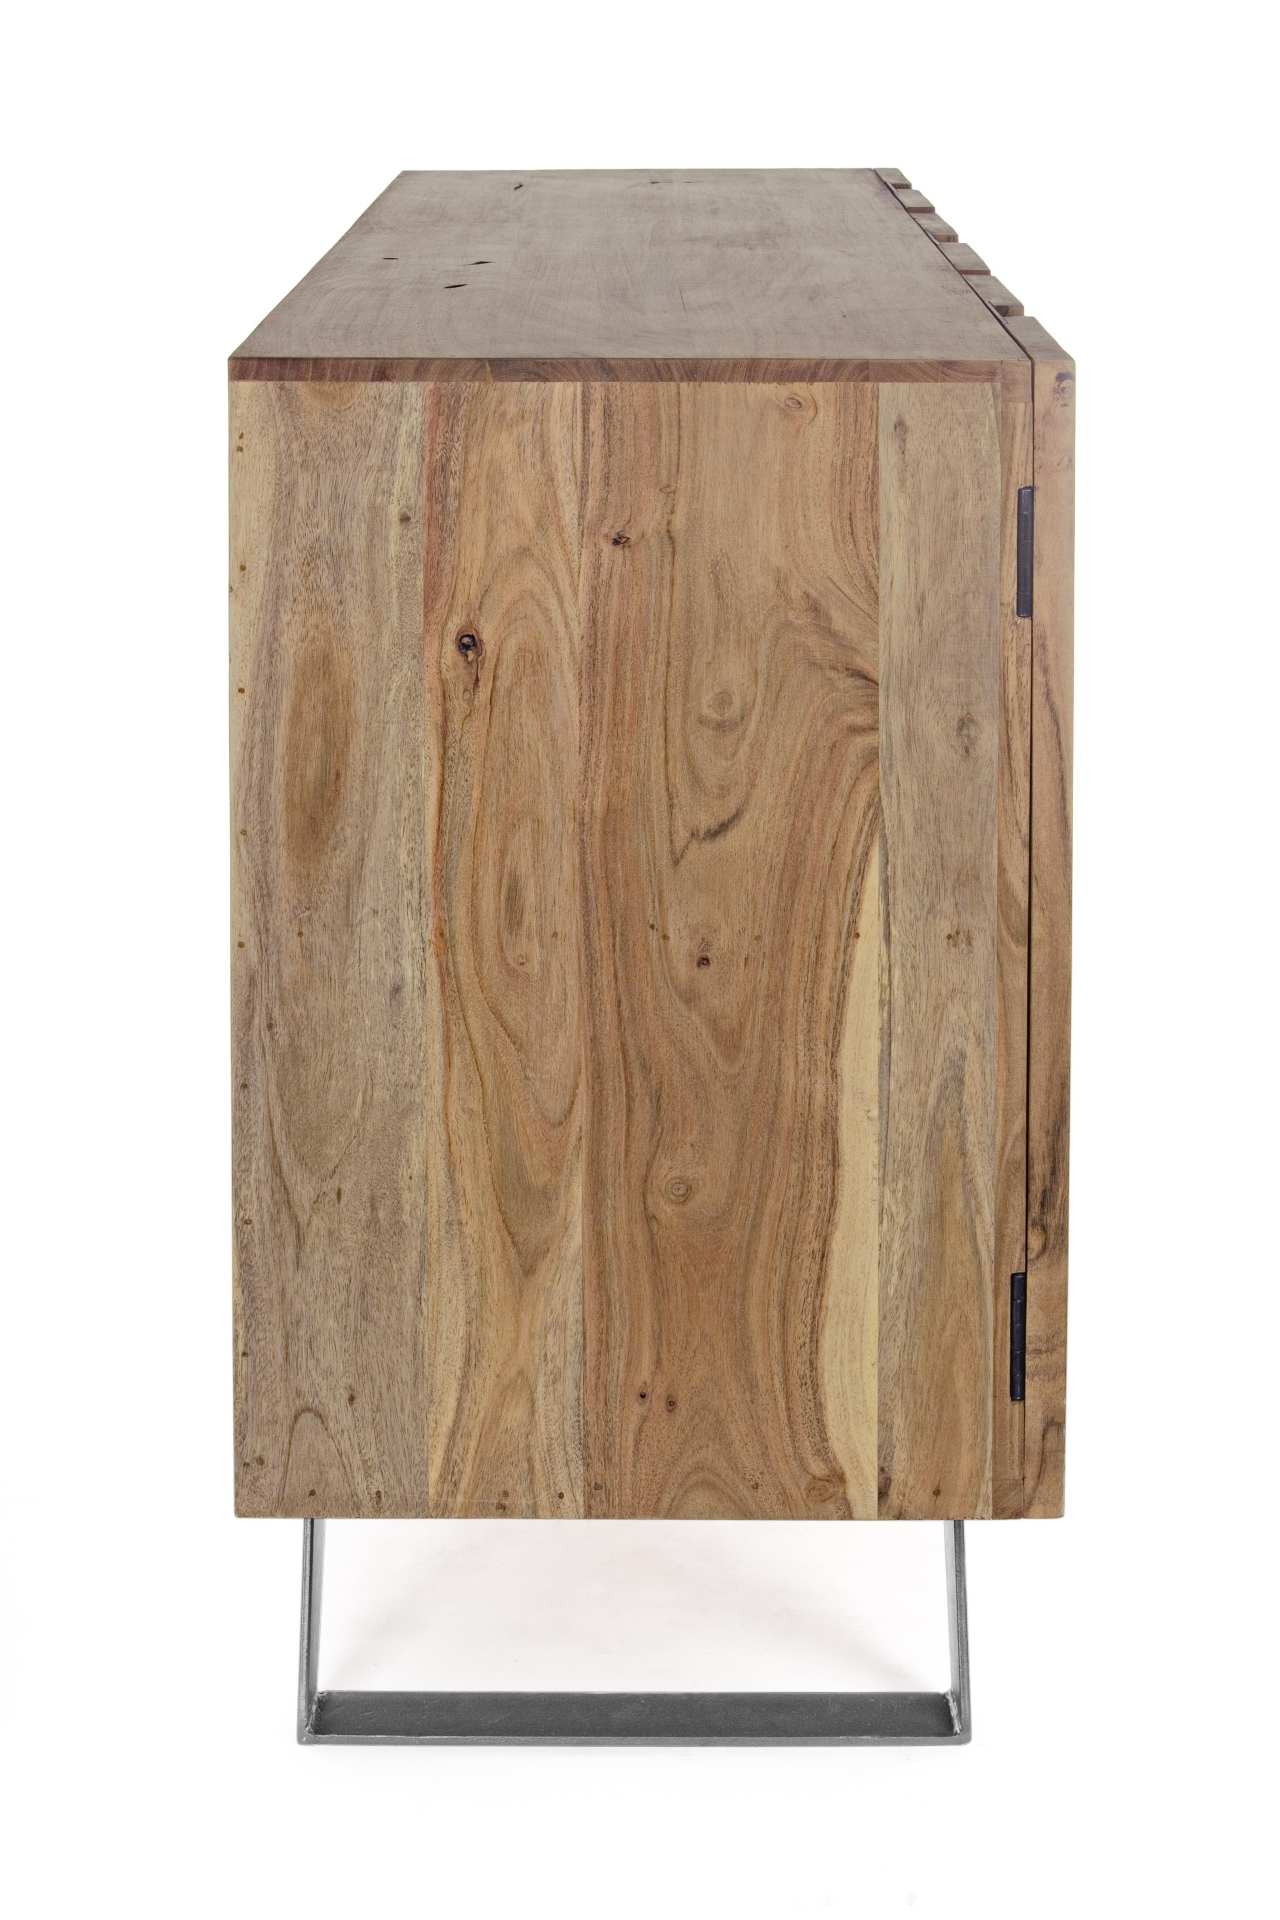 Das Sideboard Aron überzeugt mit seinem modernen Design. Gefertigt wurde es aus Akazien-Holz, welches einen natürlichen Farbton besitzt. Das Gestell ist aus Metall und hat eine schwarze Farbe. Das Sideboard verfügt über drei Türen. Die Breite beträgt 1454